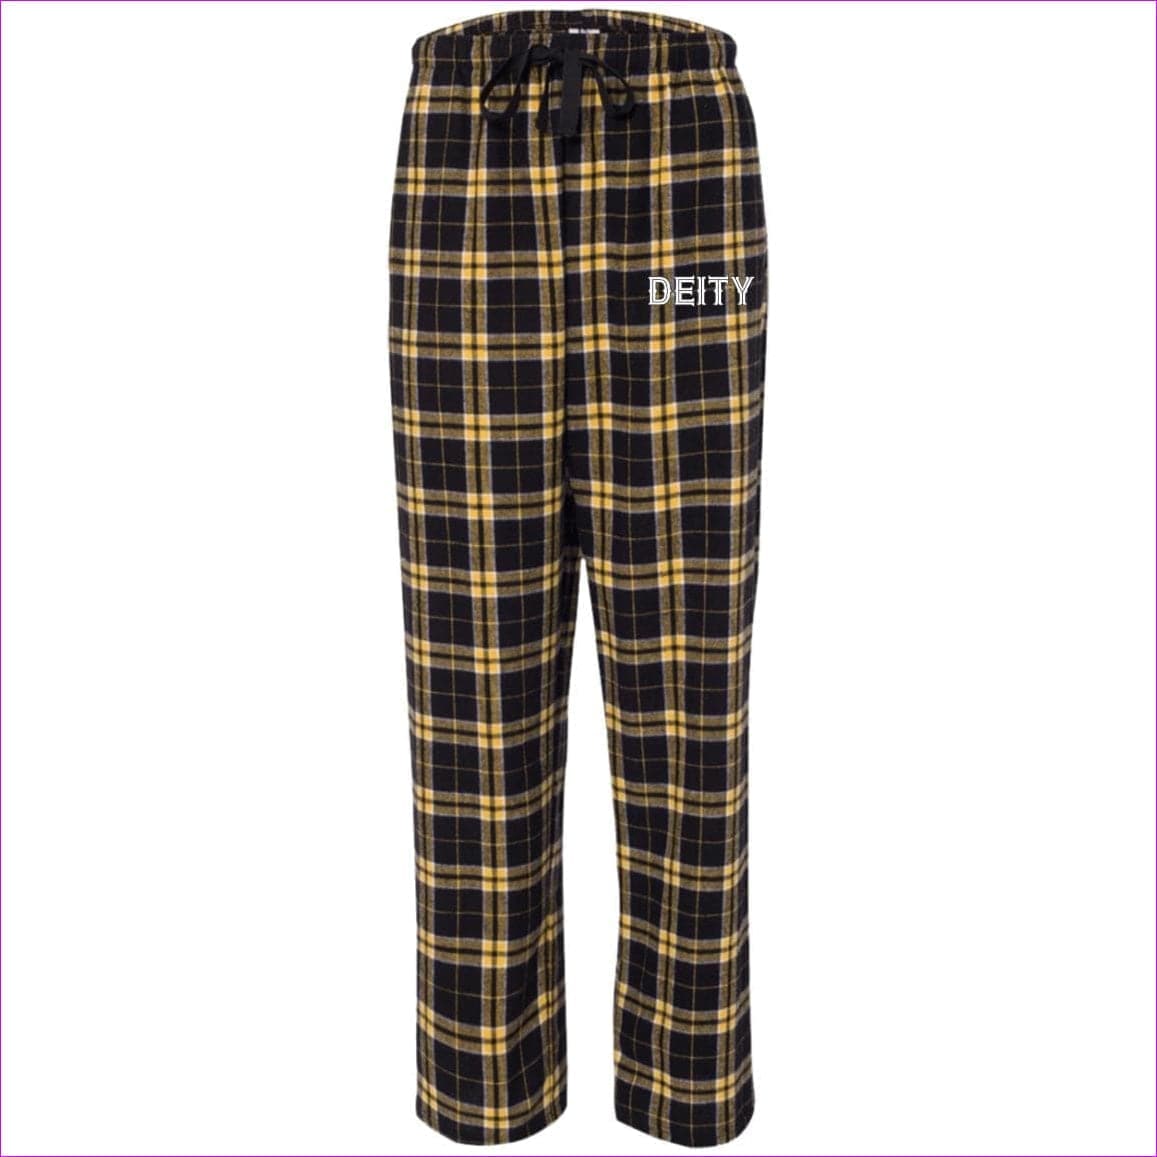 Black Gold - Deity Flannel Pants - unisex pajamas Pants at TFC&H Co.